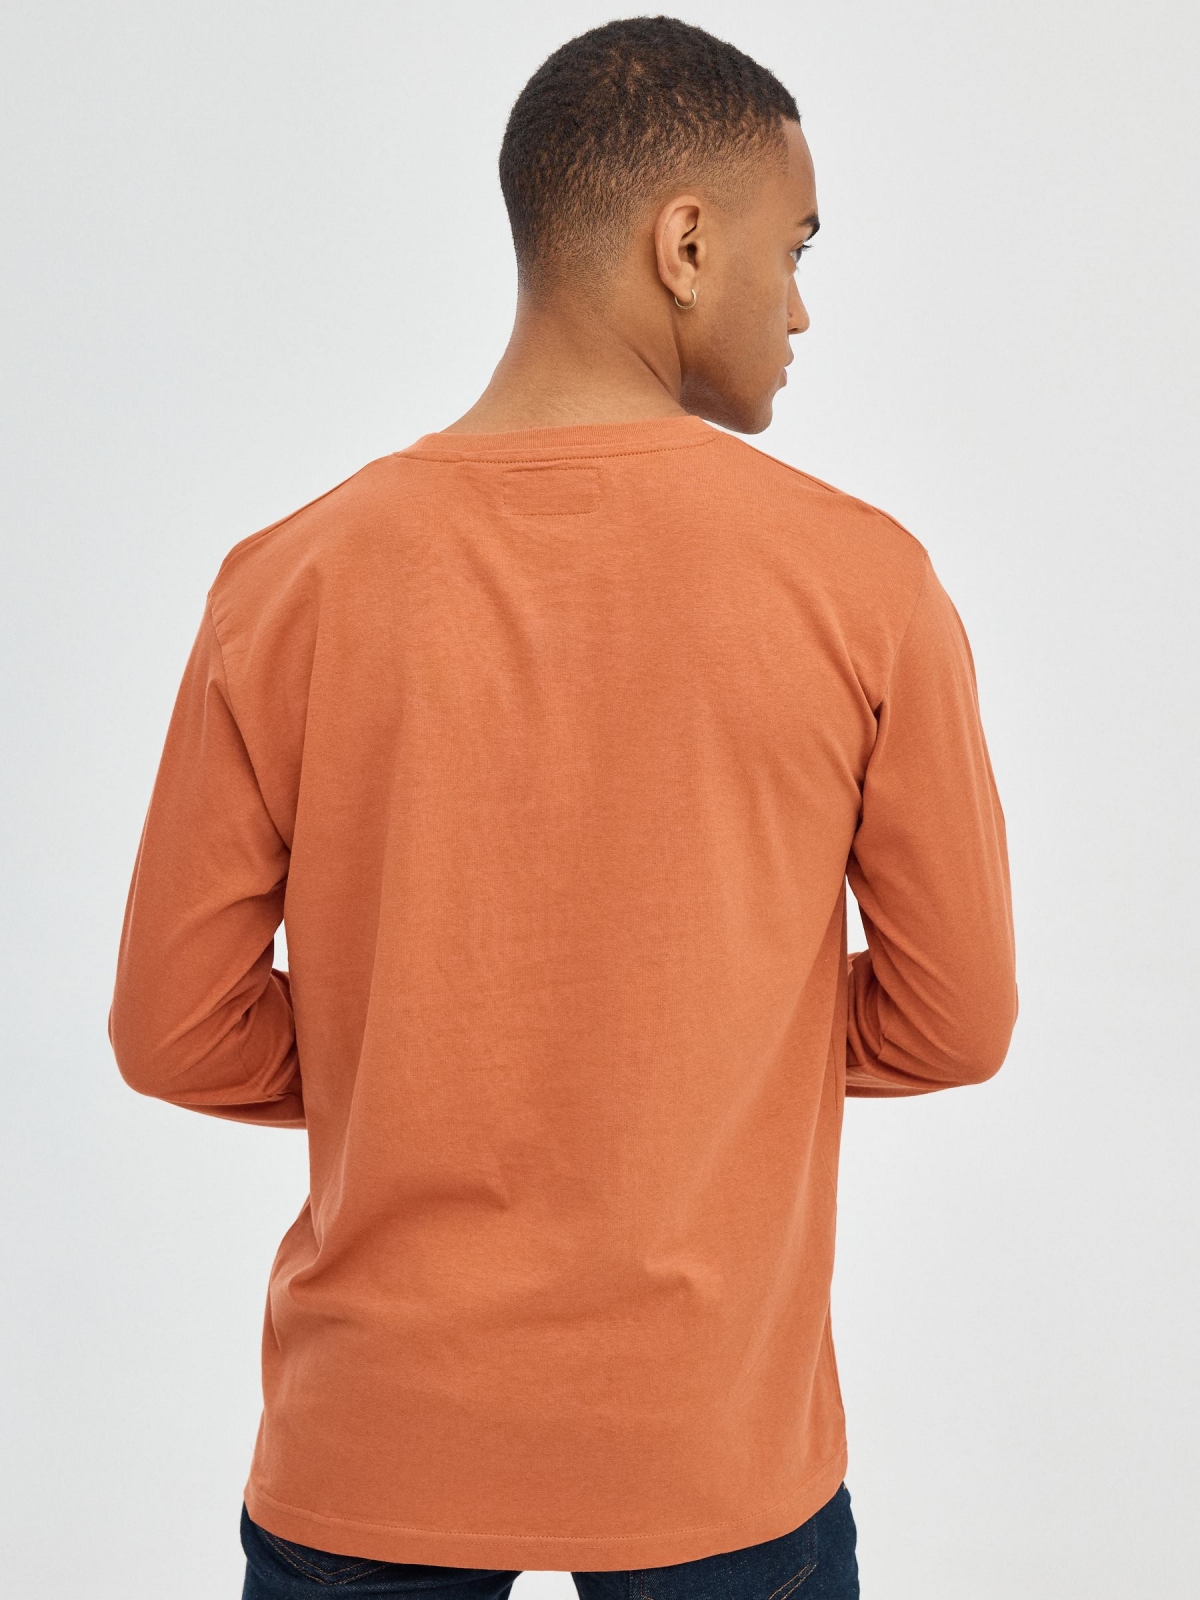 Camiseta regular INSIDE marrón vista media trasera